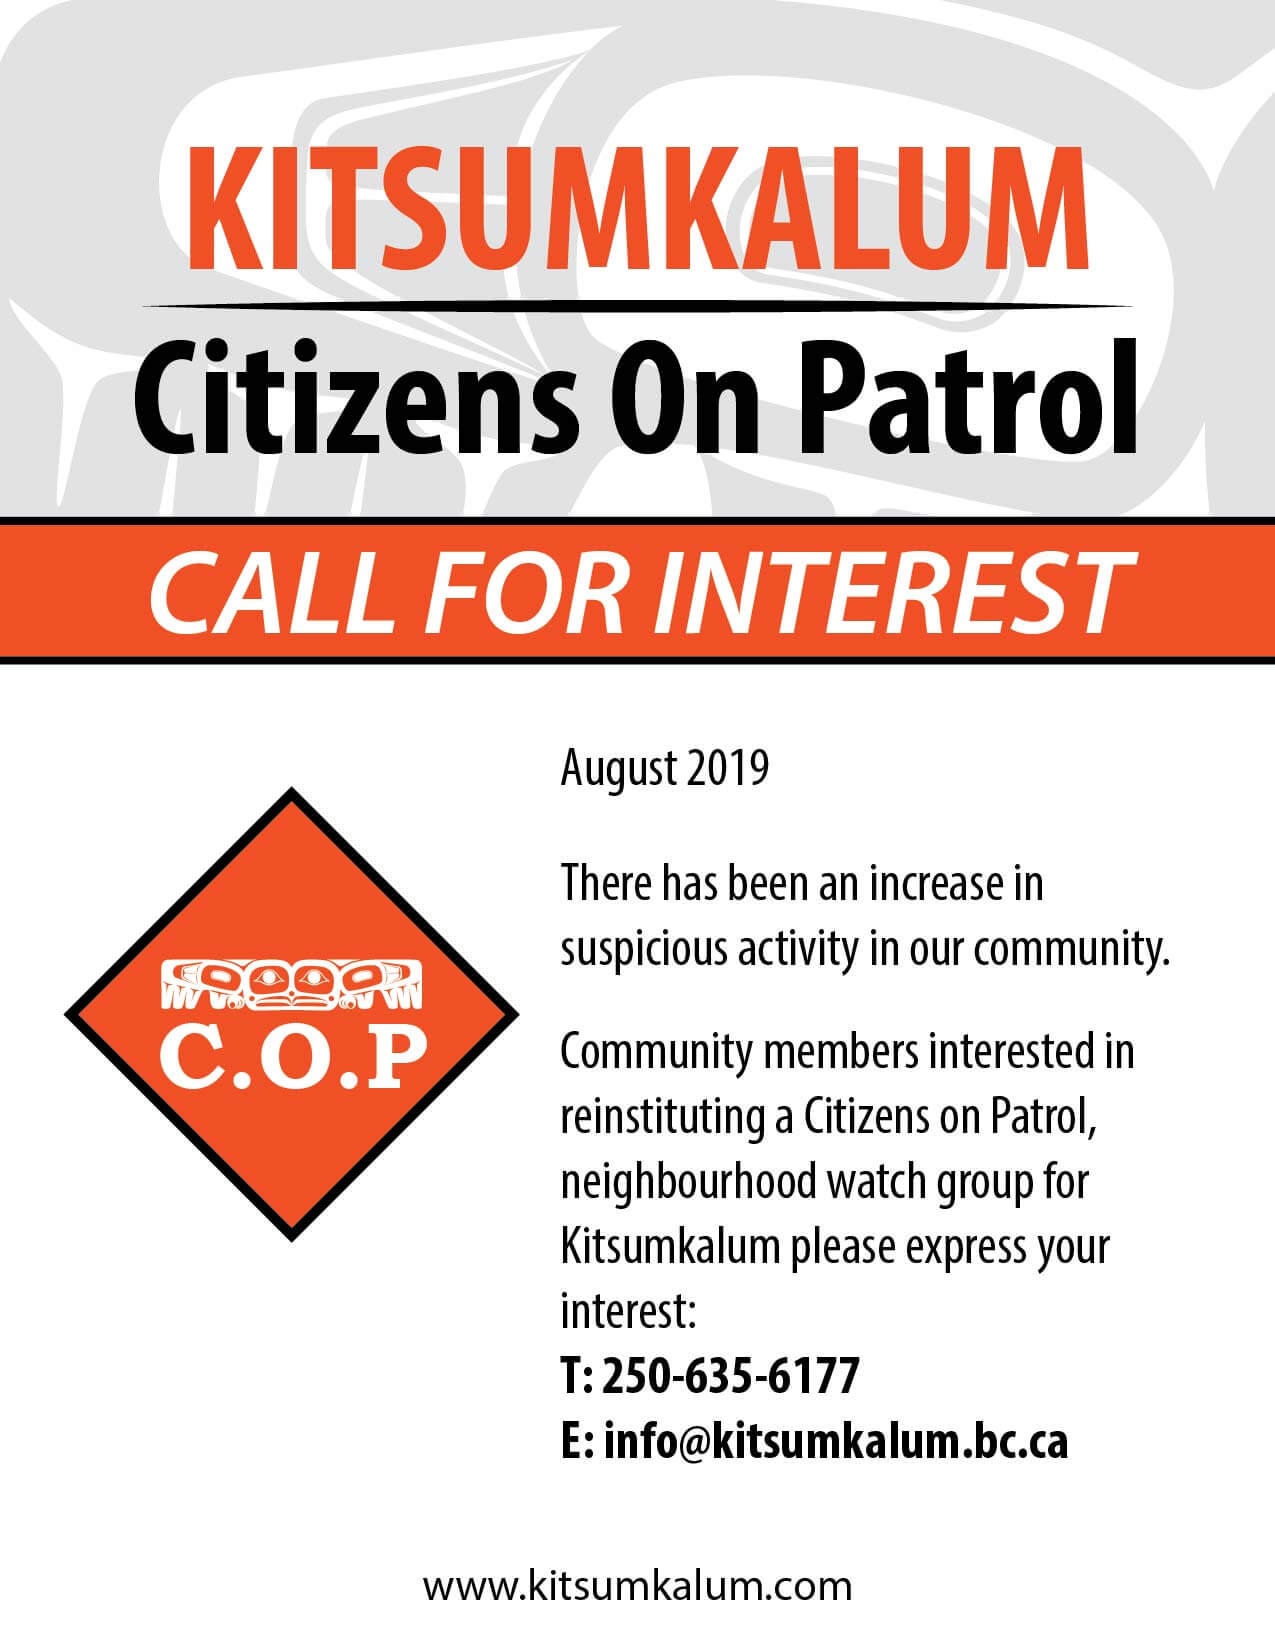 Kitsumkalum Citizens on Patrol Call for Interest